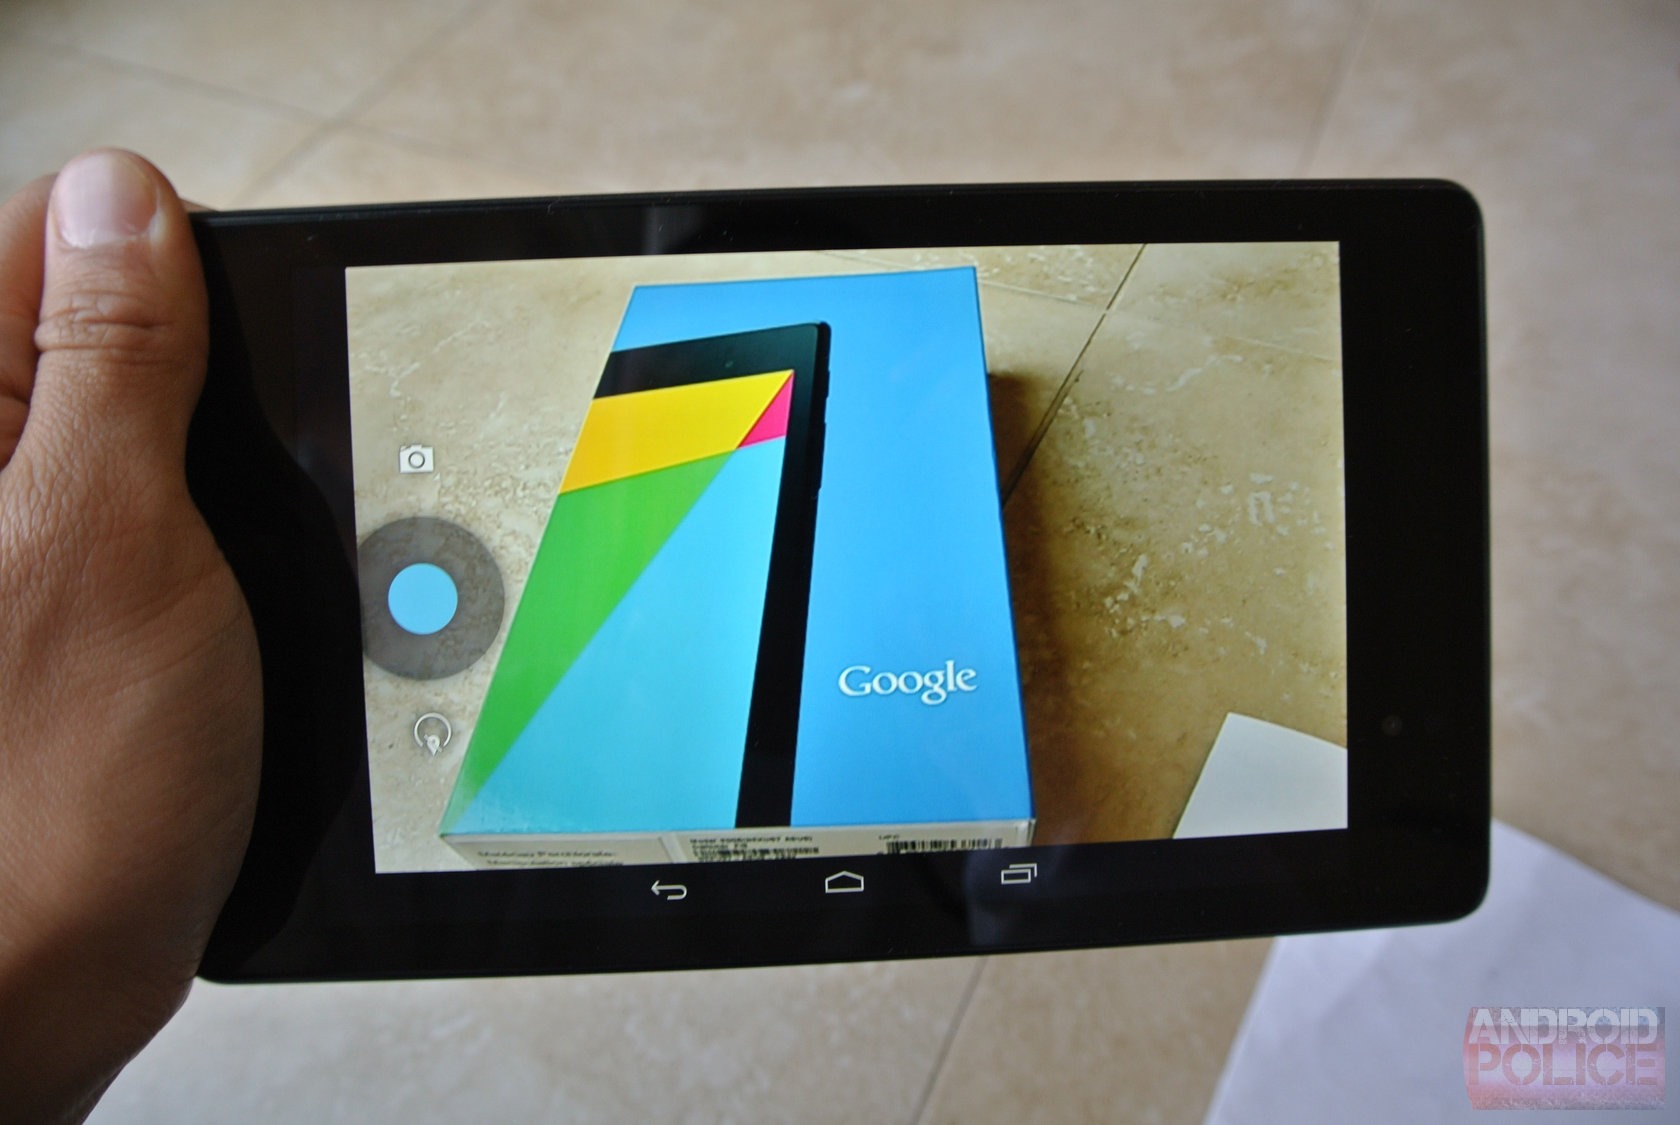 Google Nexus 7 - thiết bị giải trí tuyệt vời với mức giá hợp lý